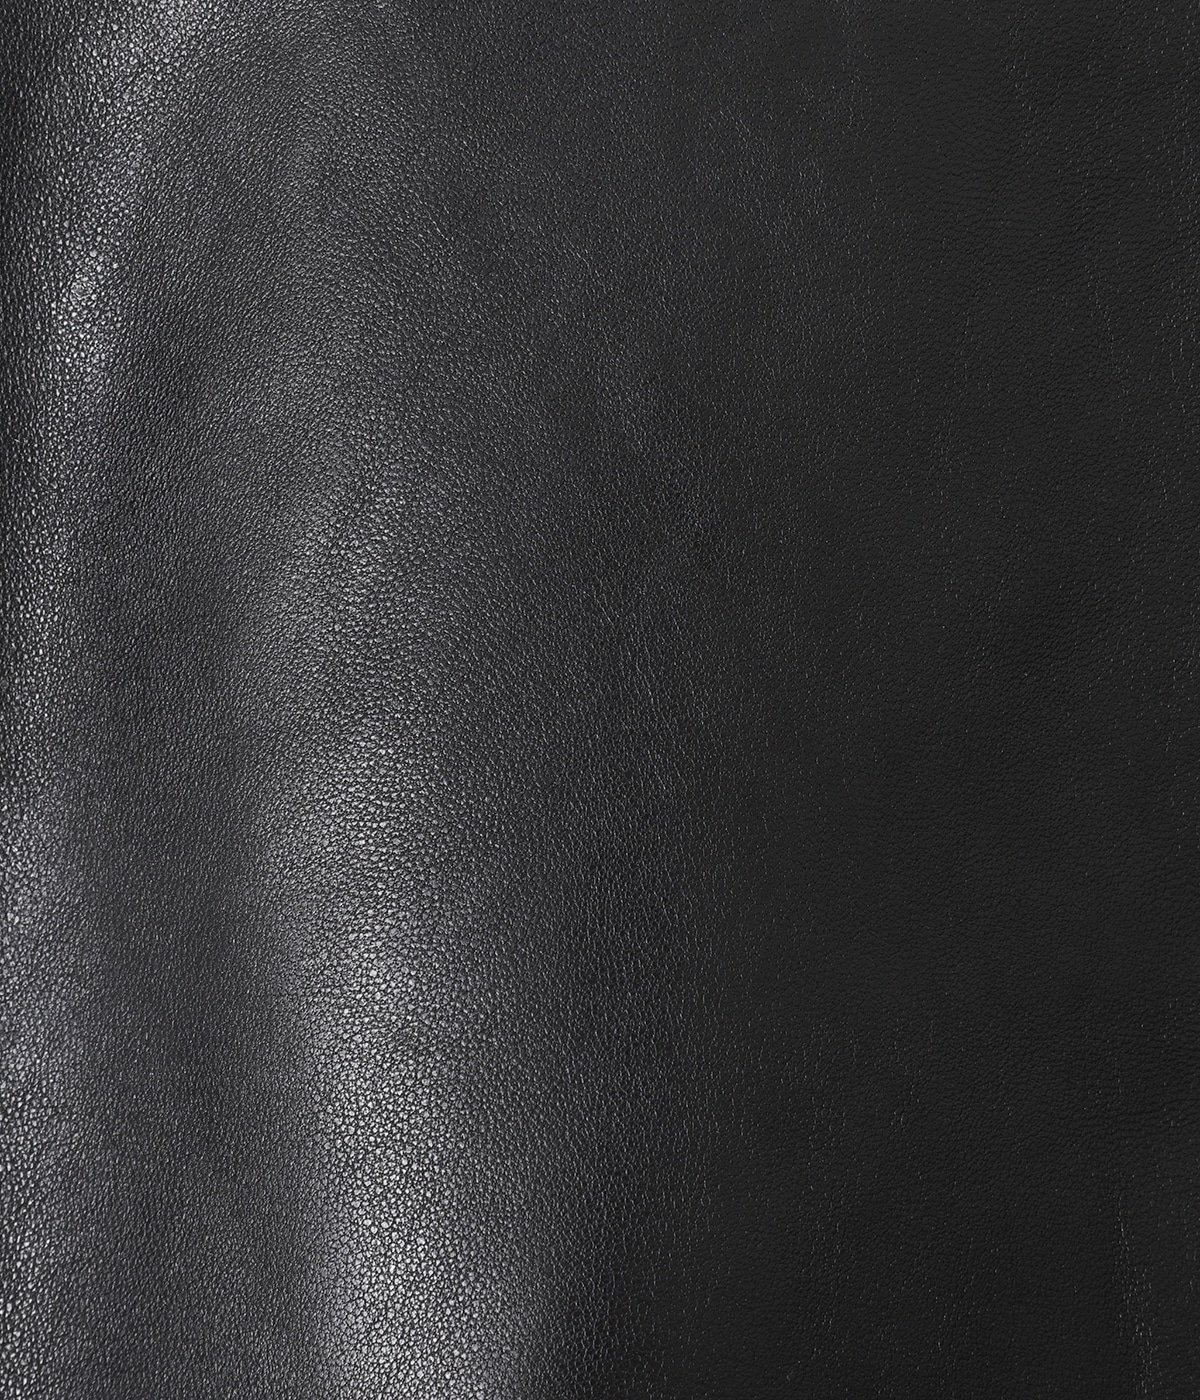 【レディース】vintage leather THE/ a riders jacket